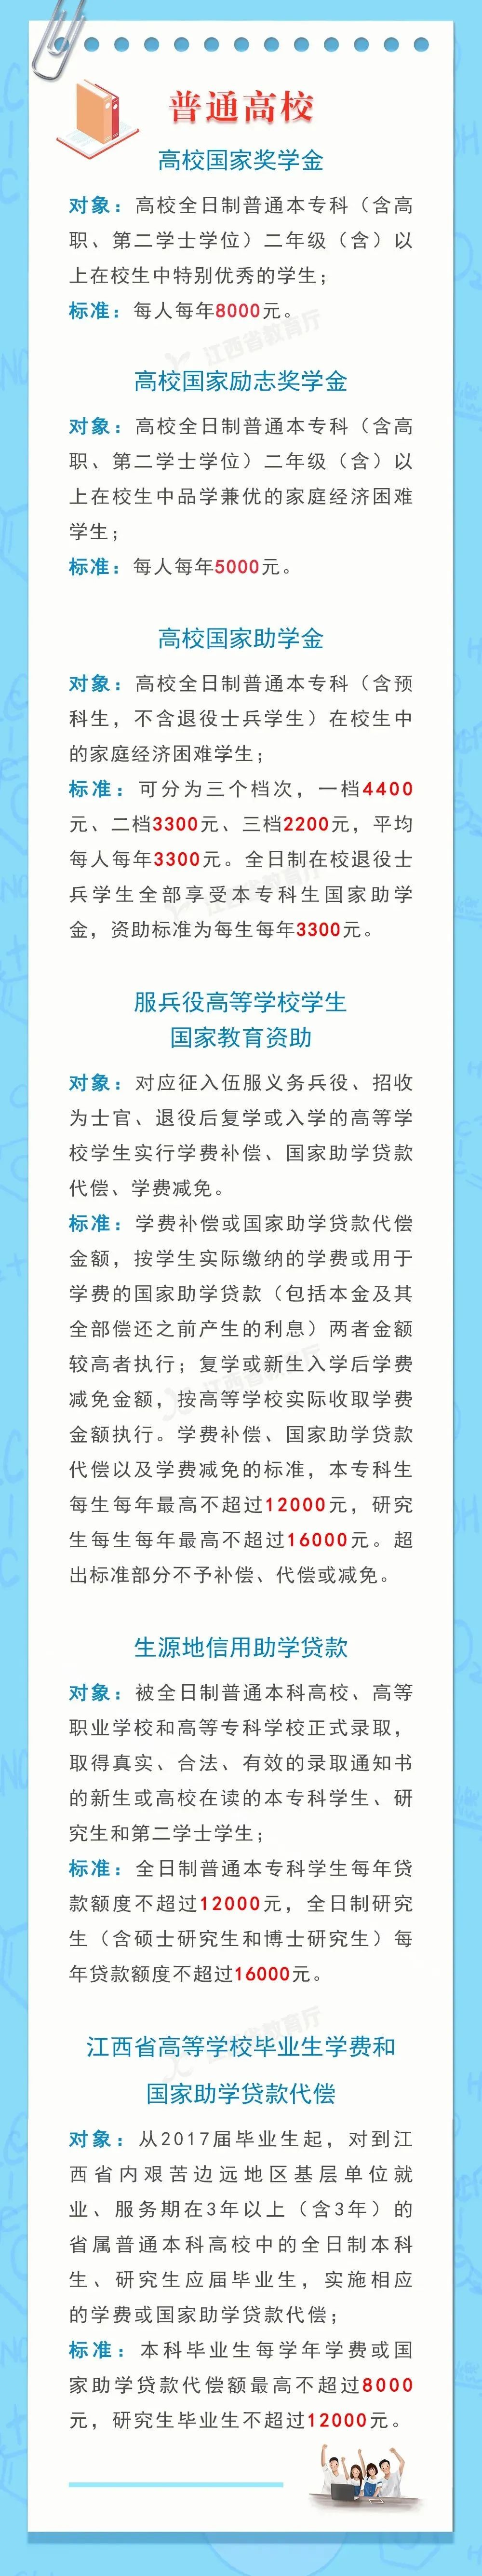 2022年江西省学生资助政策发布